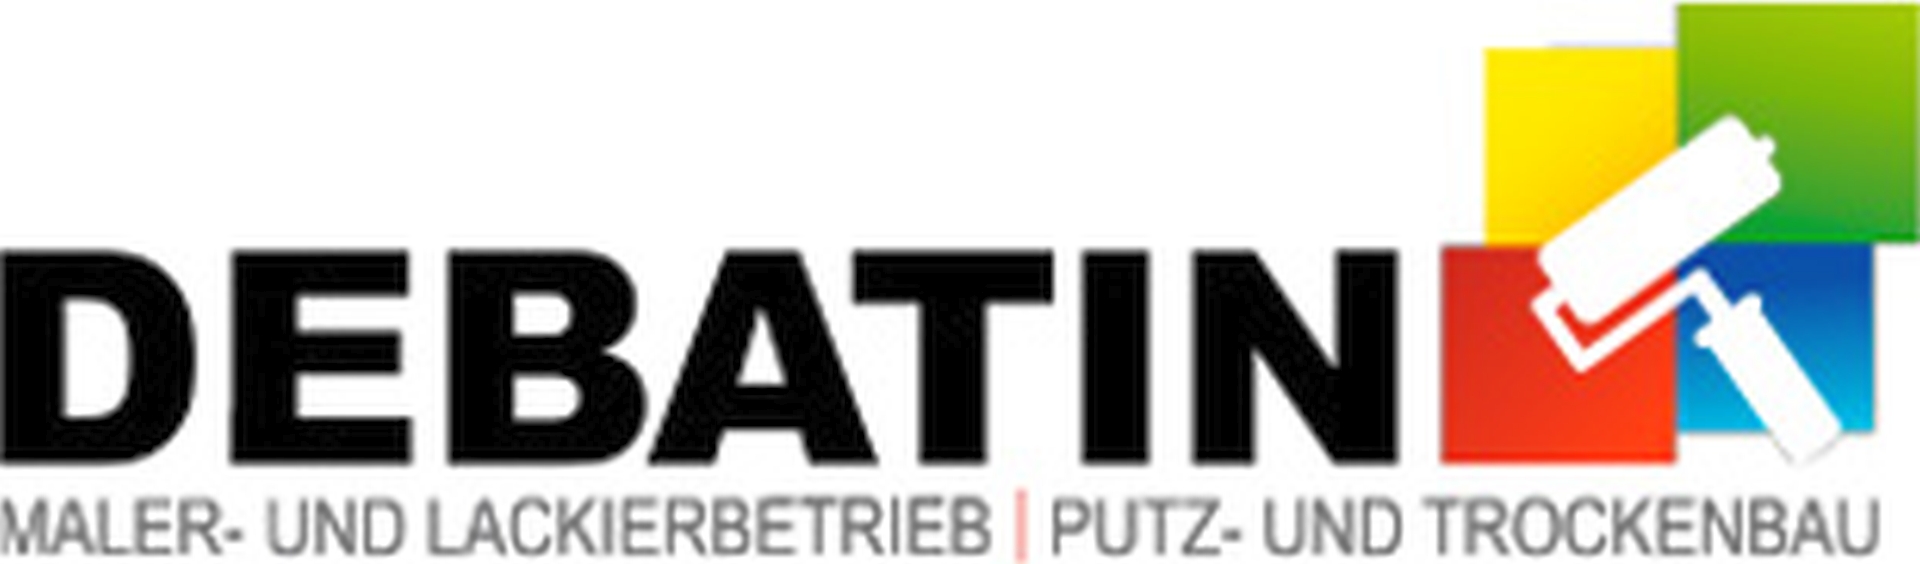 Logo der Firma Werner Debatin GmbH Maler und Lackierbetrieb Putz und Trockenbau aus Bruchsal